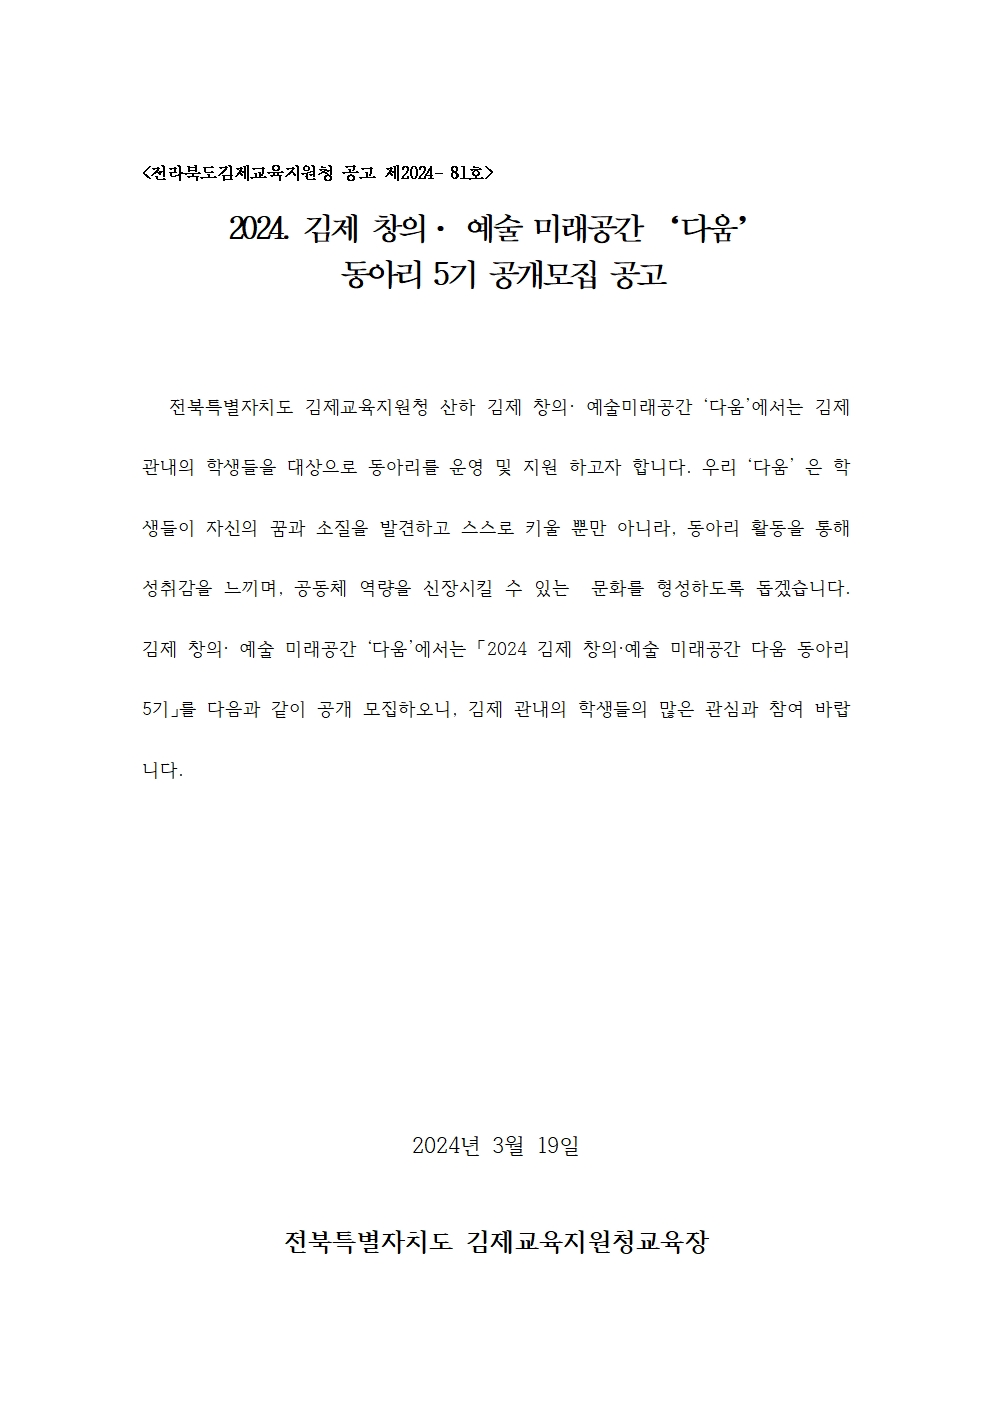 2024년 김제창의예술미래공간 '다움' 동아리 5기 모집 공고001